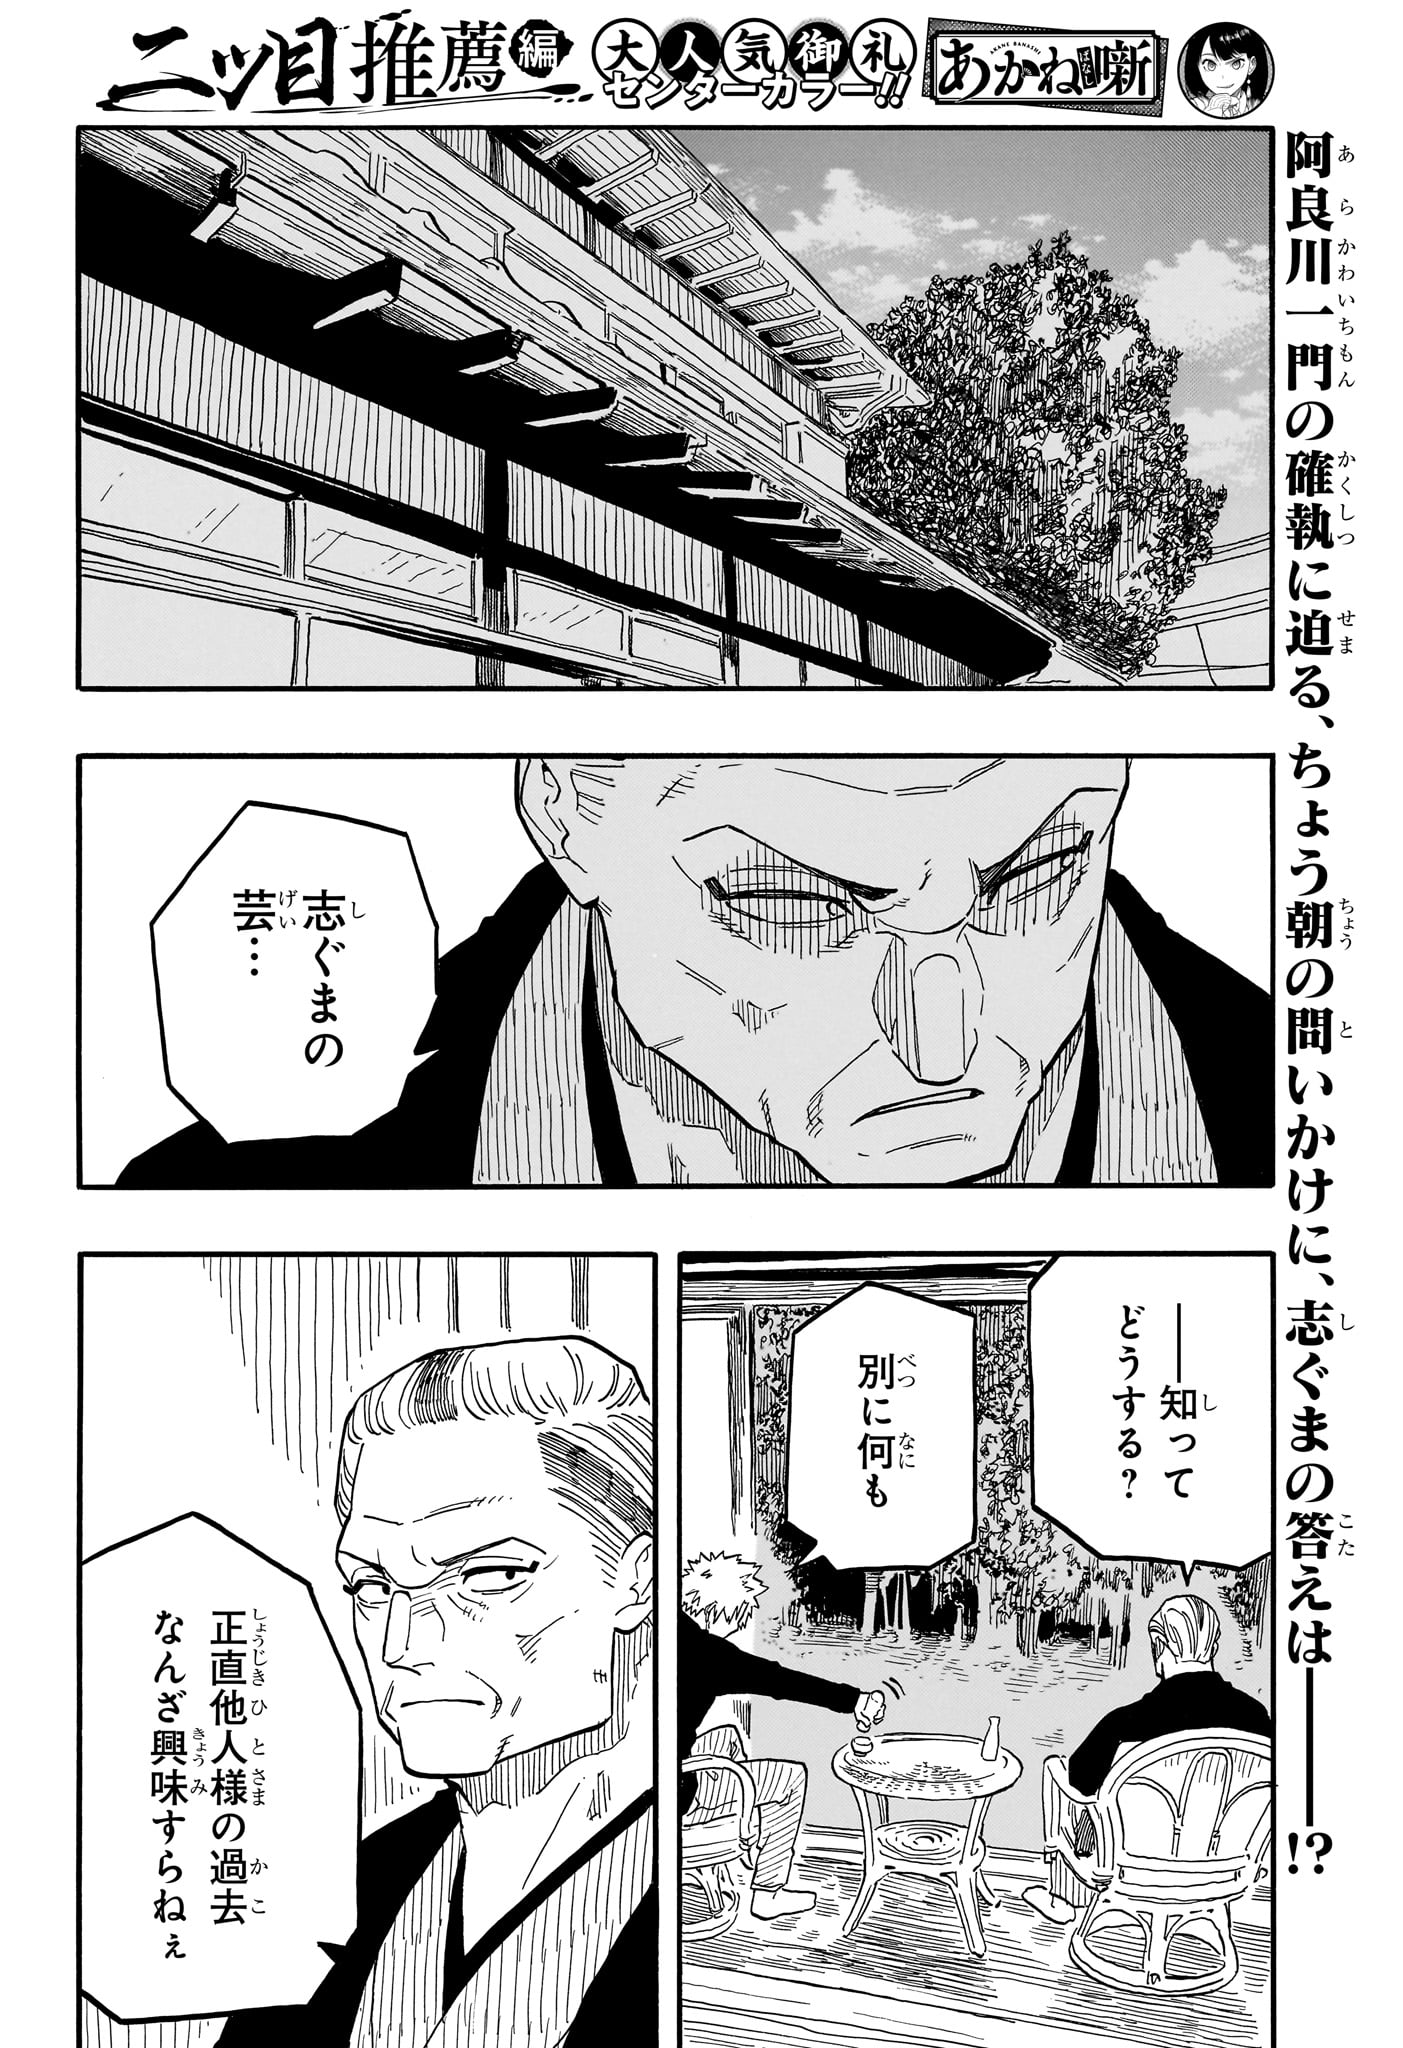 Akane-Banashi - Chapter 94 - Page 2